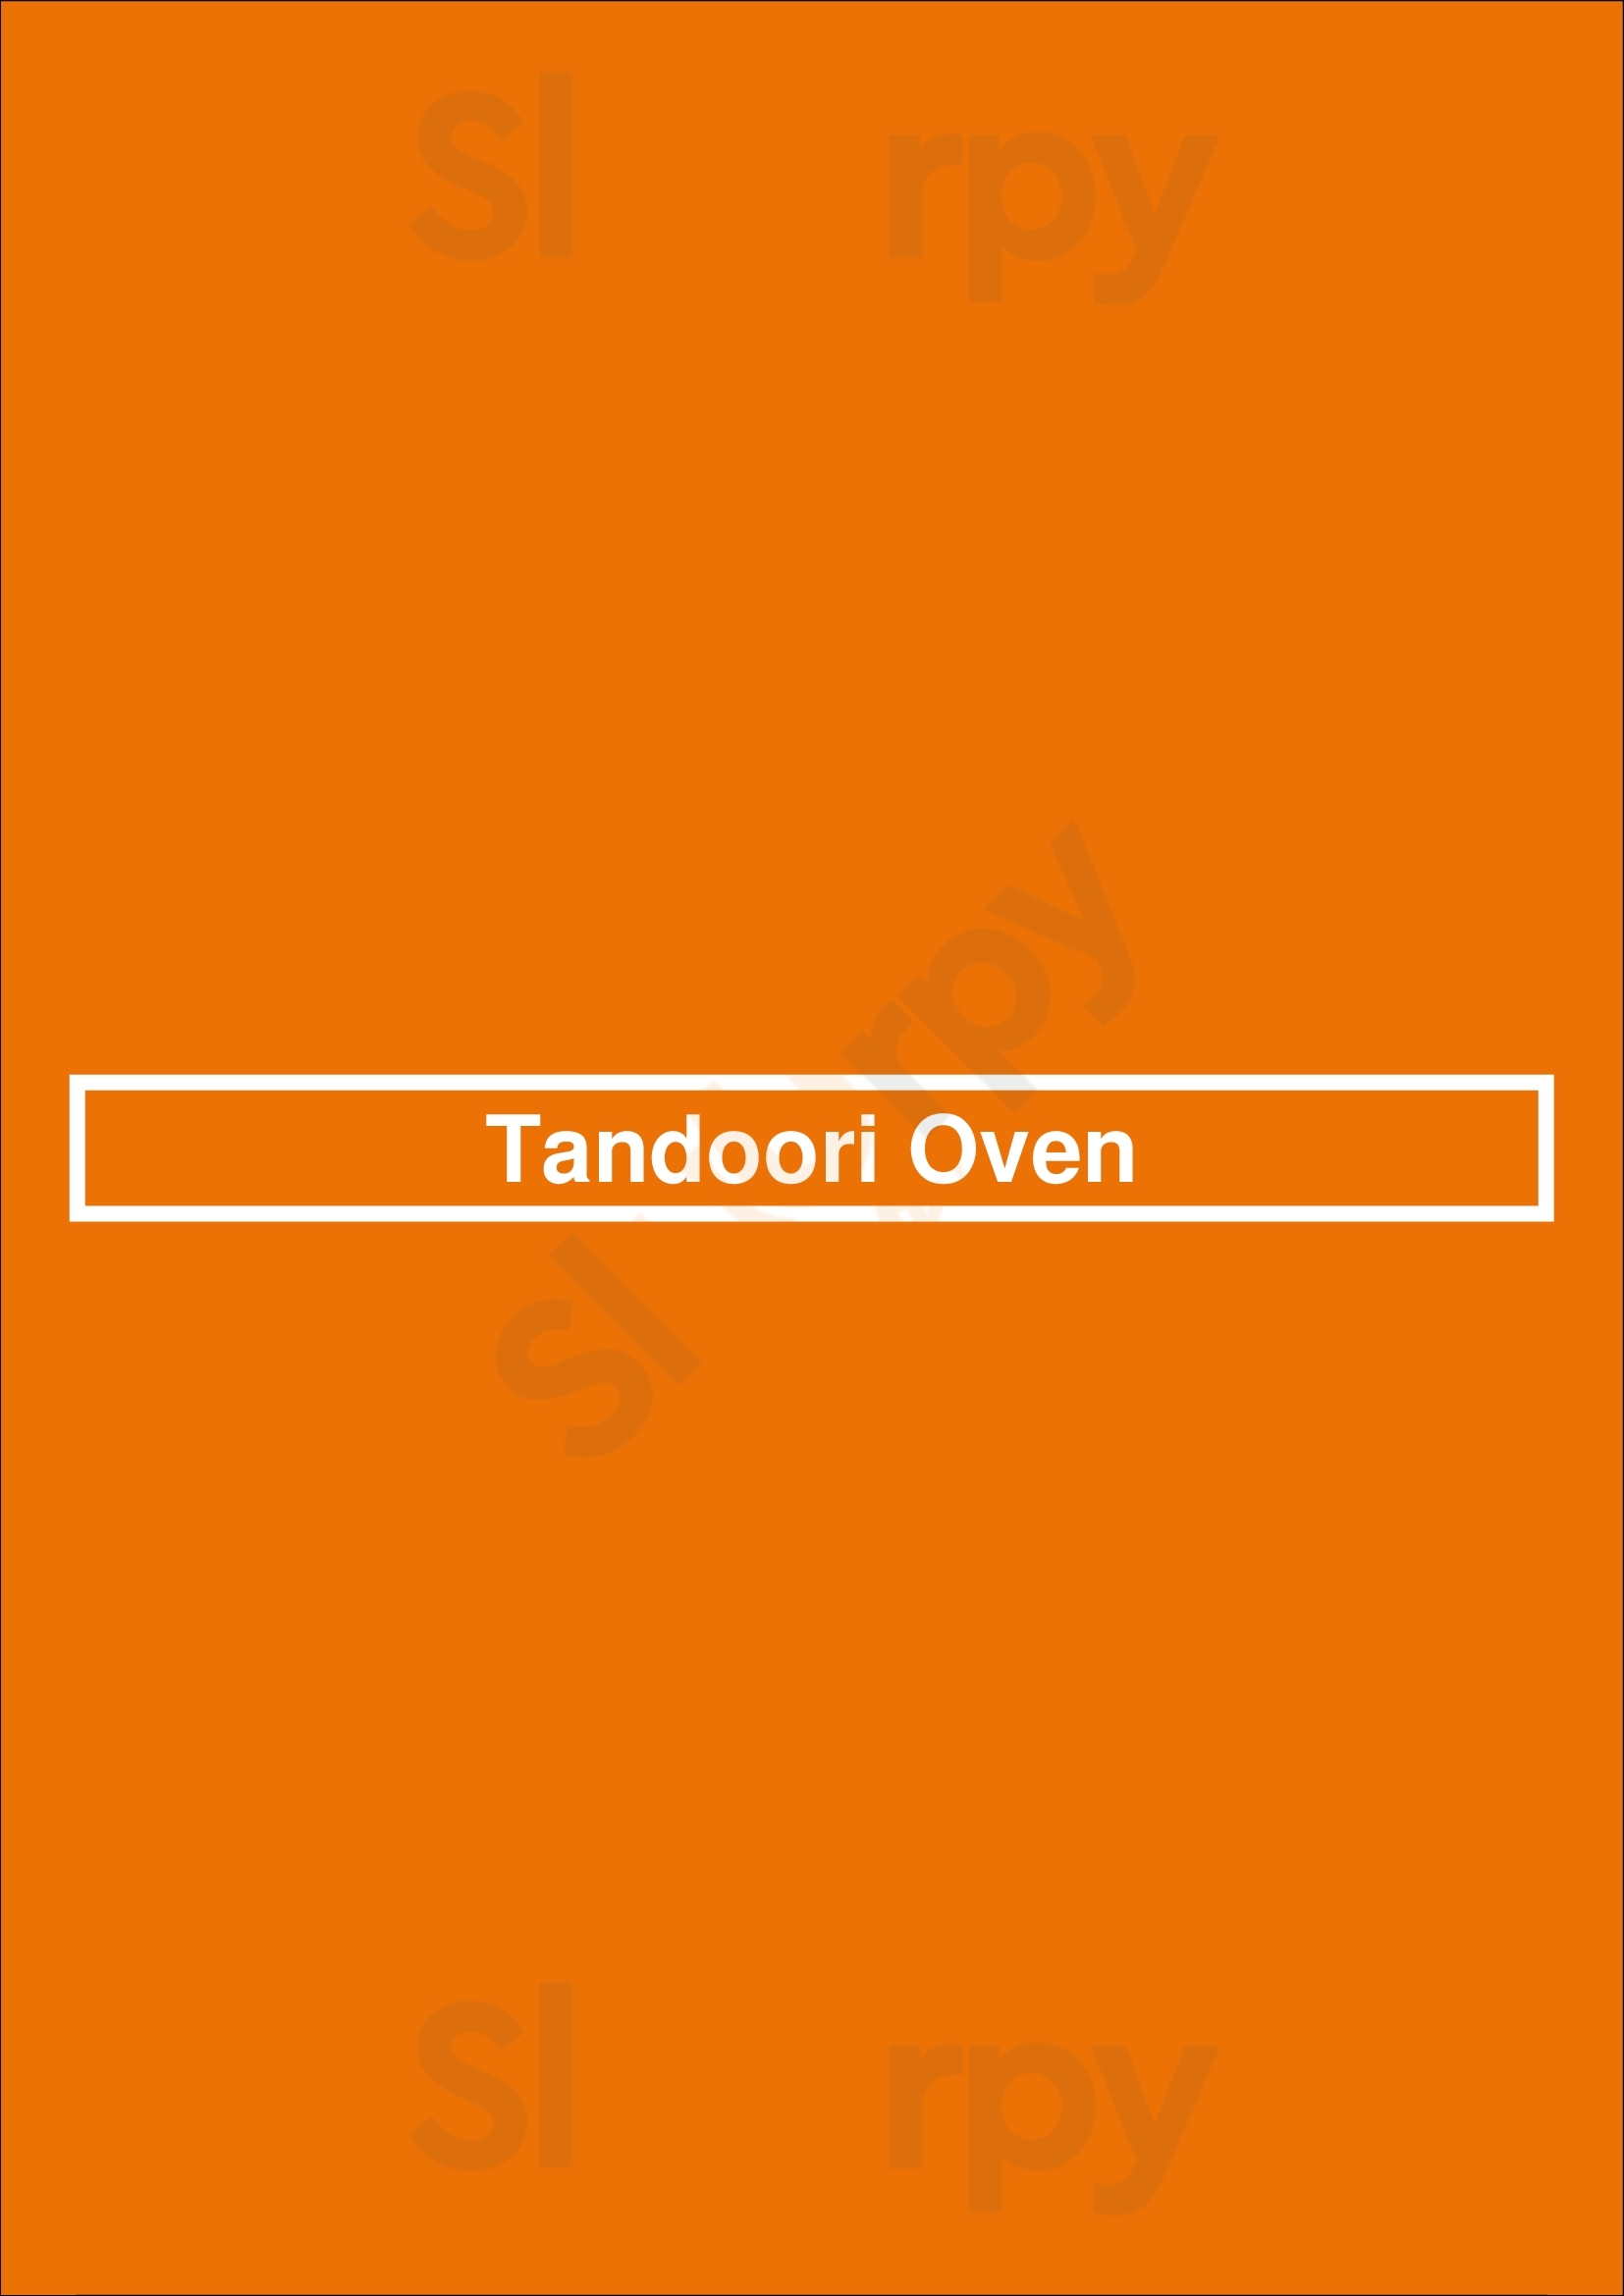 Tandoori Oven Restaurant Vancouver Menu - 1